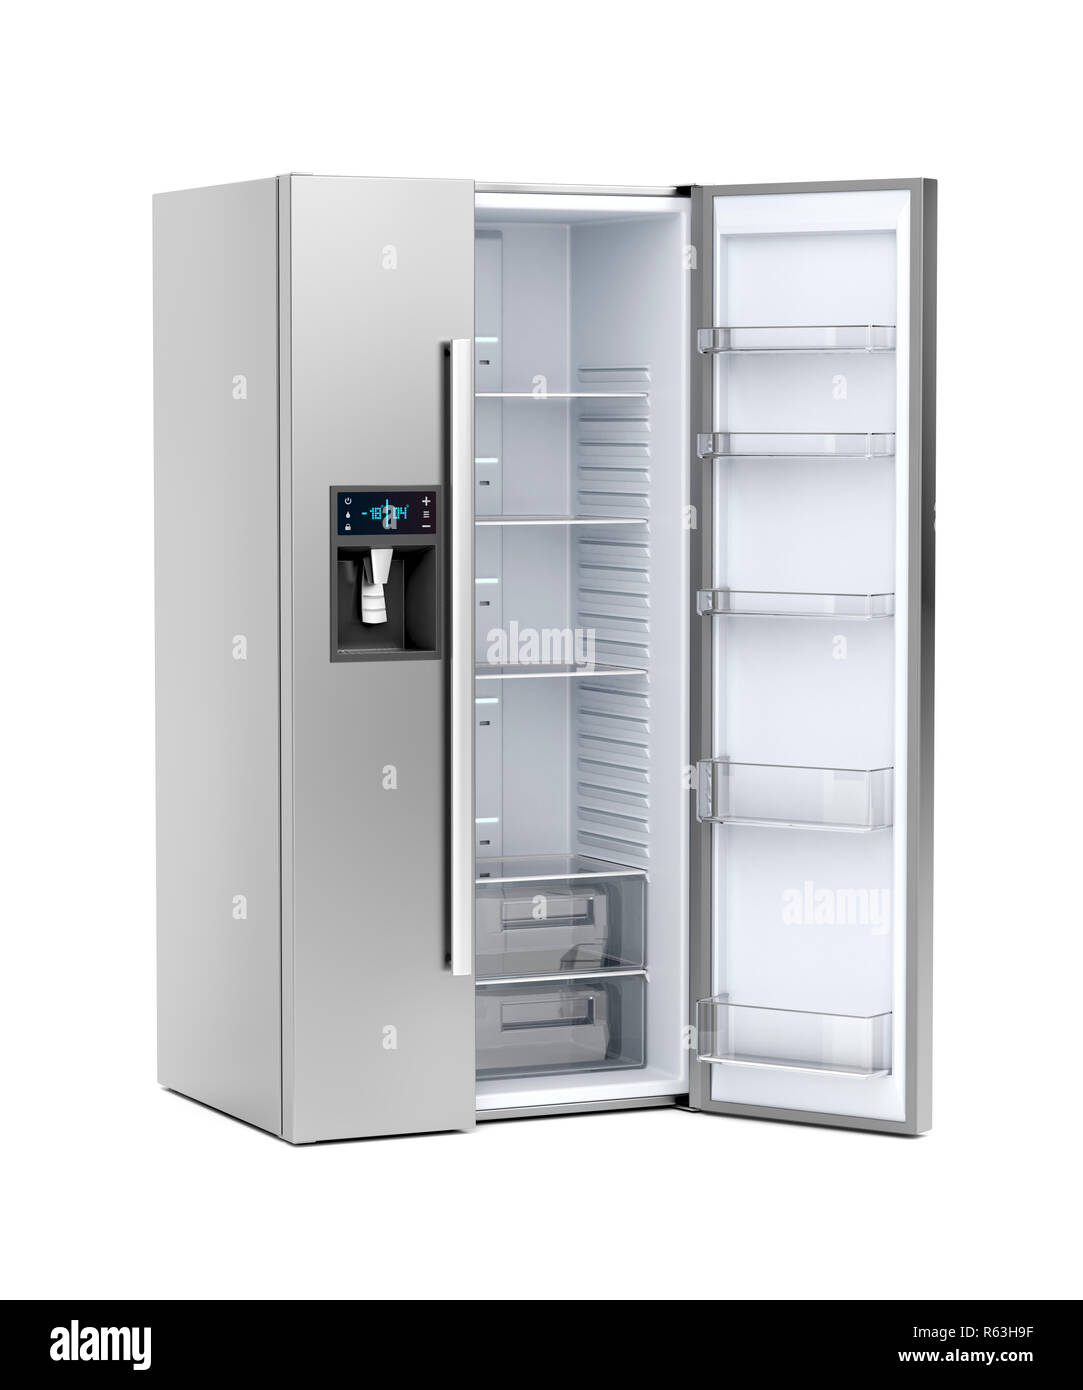 Big refrigerator with opened door Stock Photo